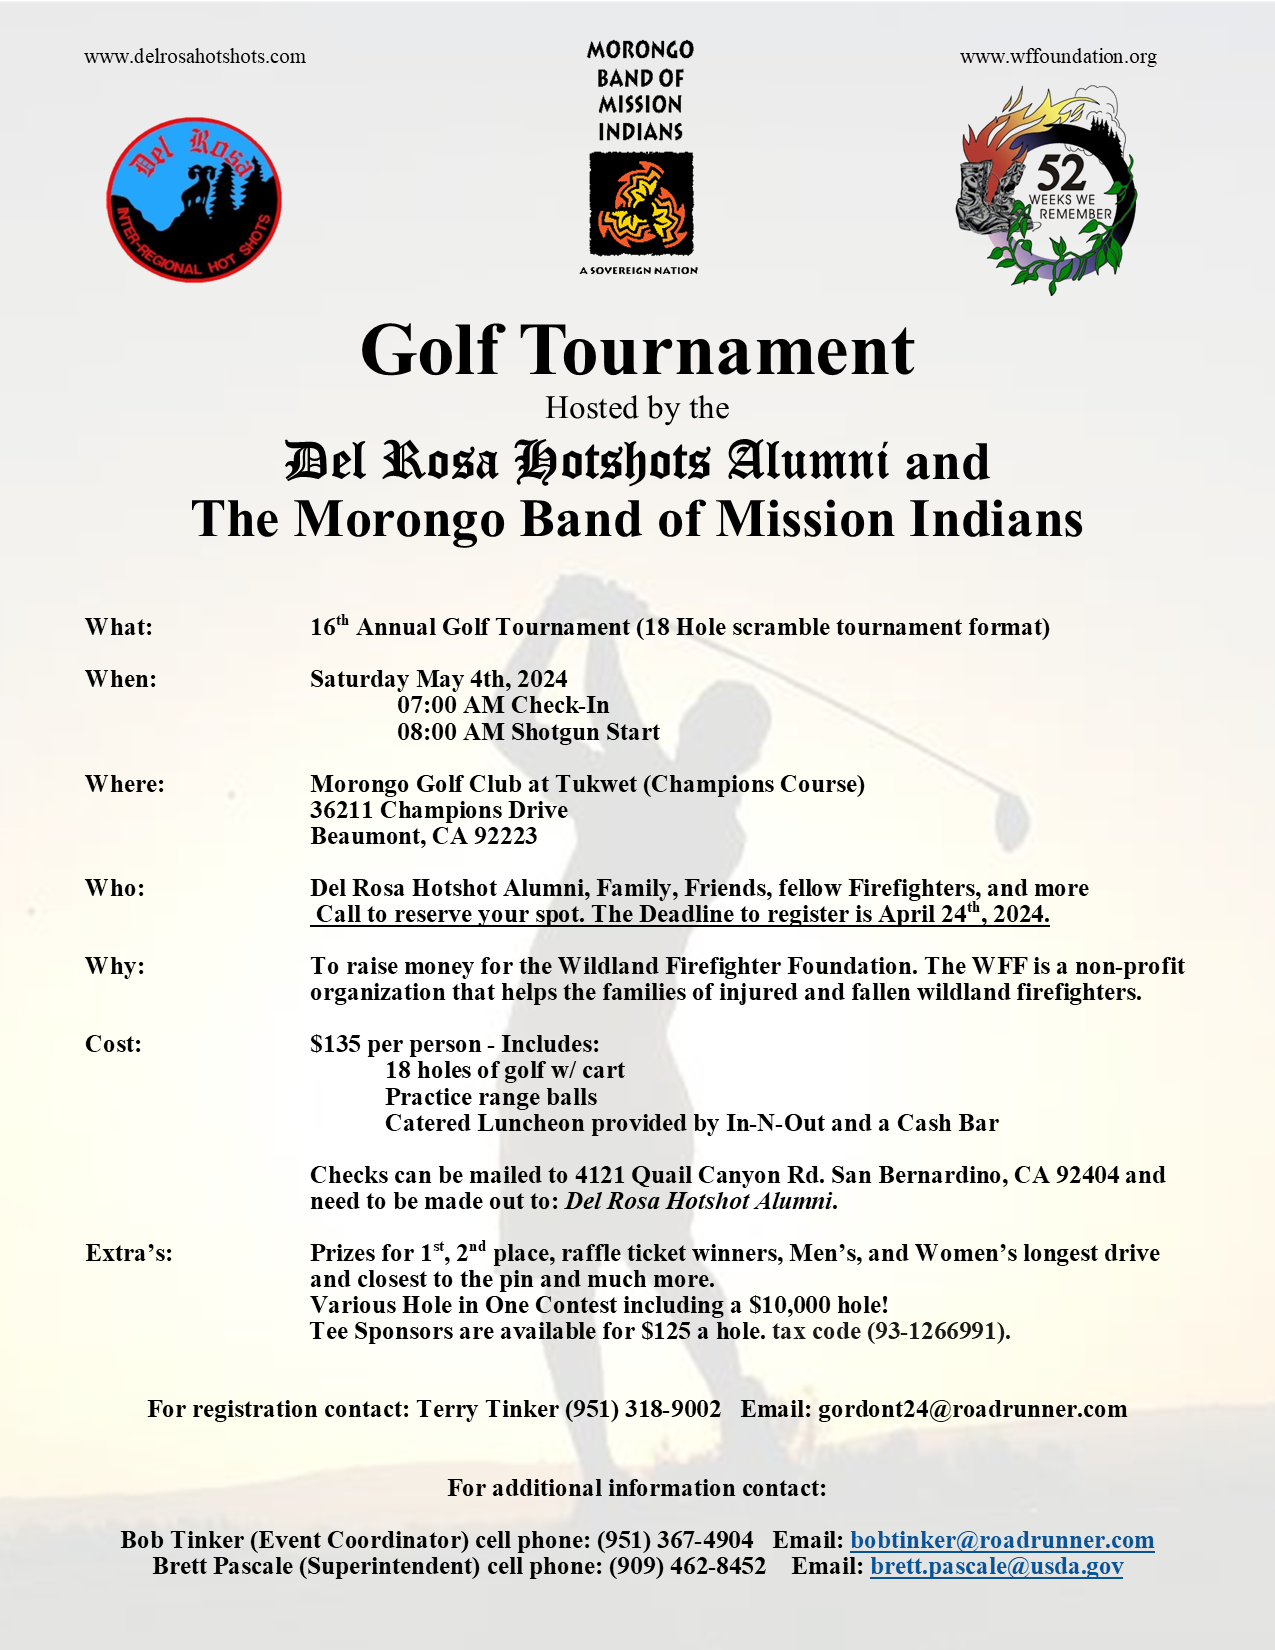 Del Rosa Hotshots Alumni & MBMI Tournament May 4 2024